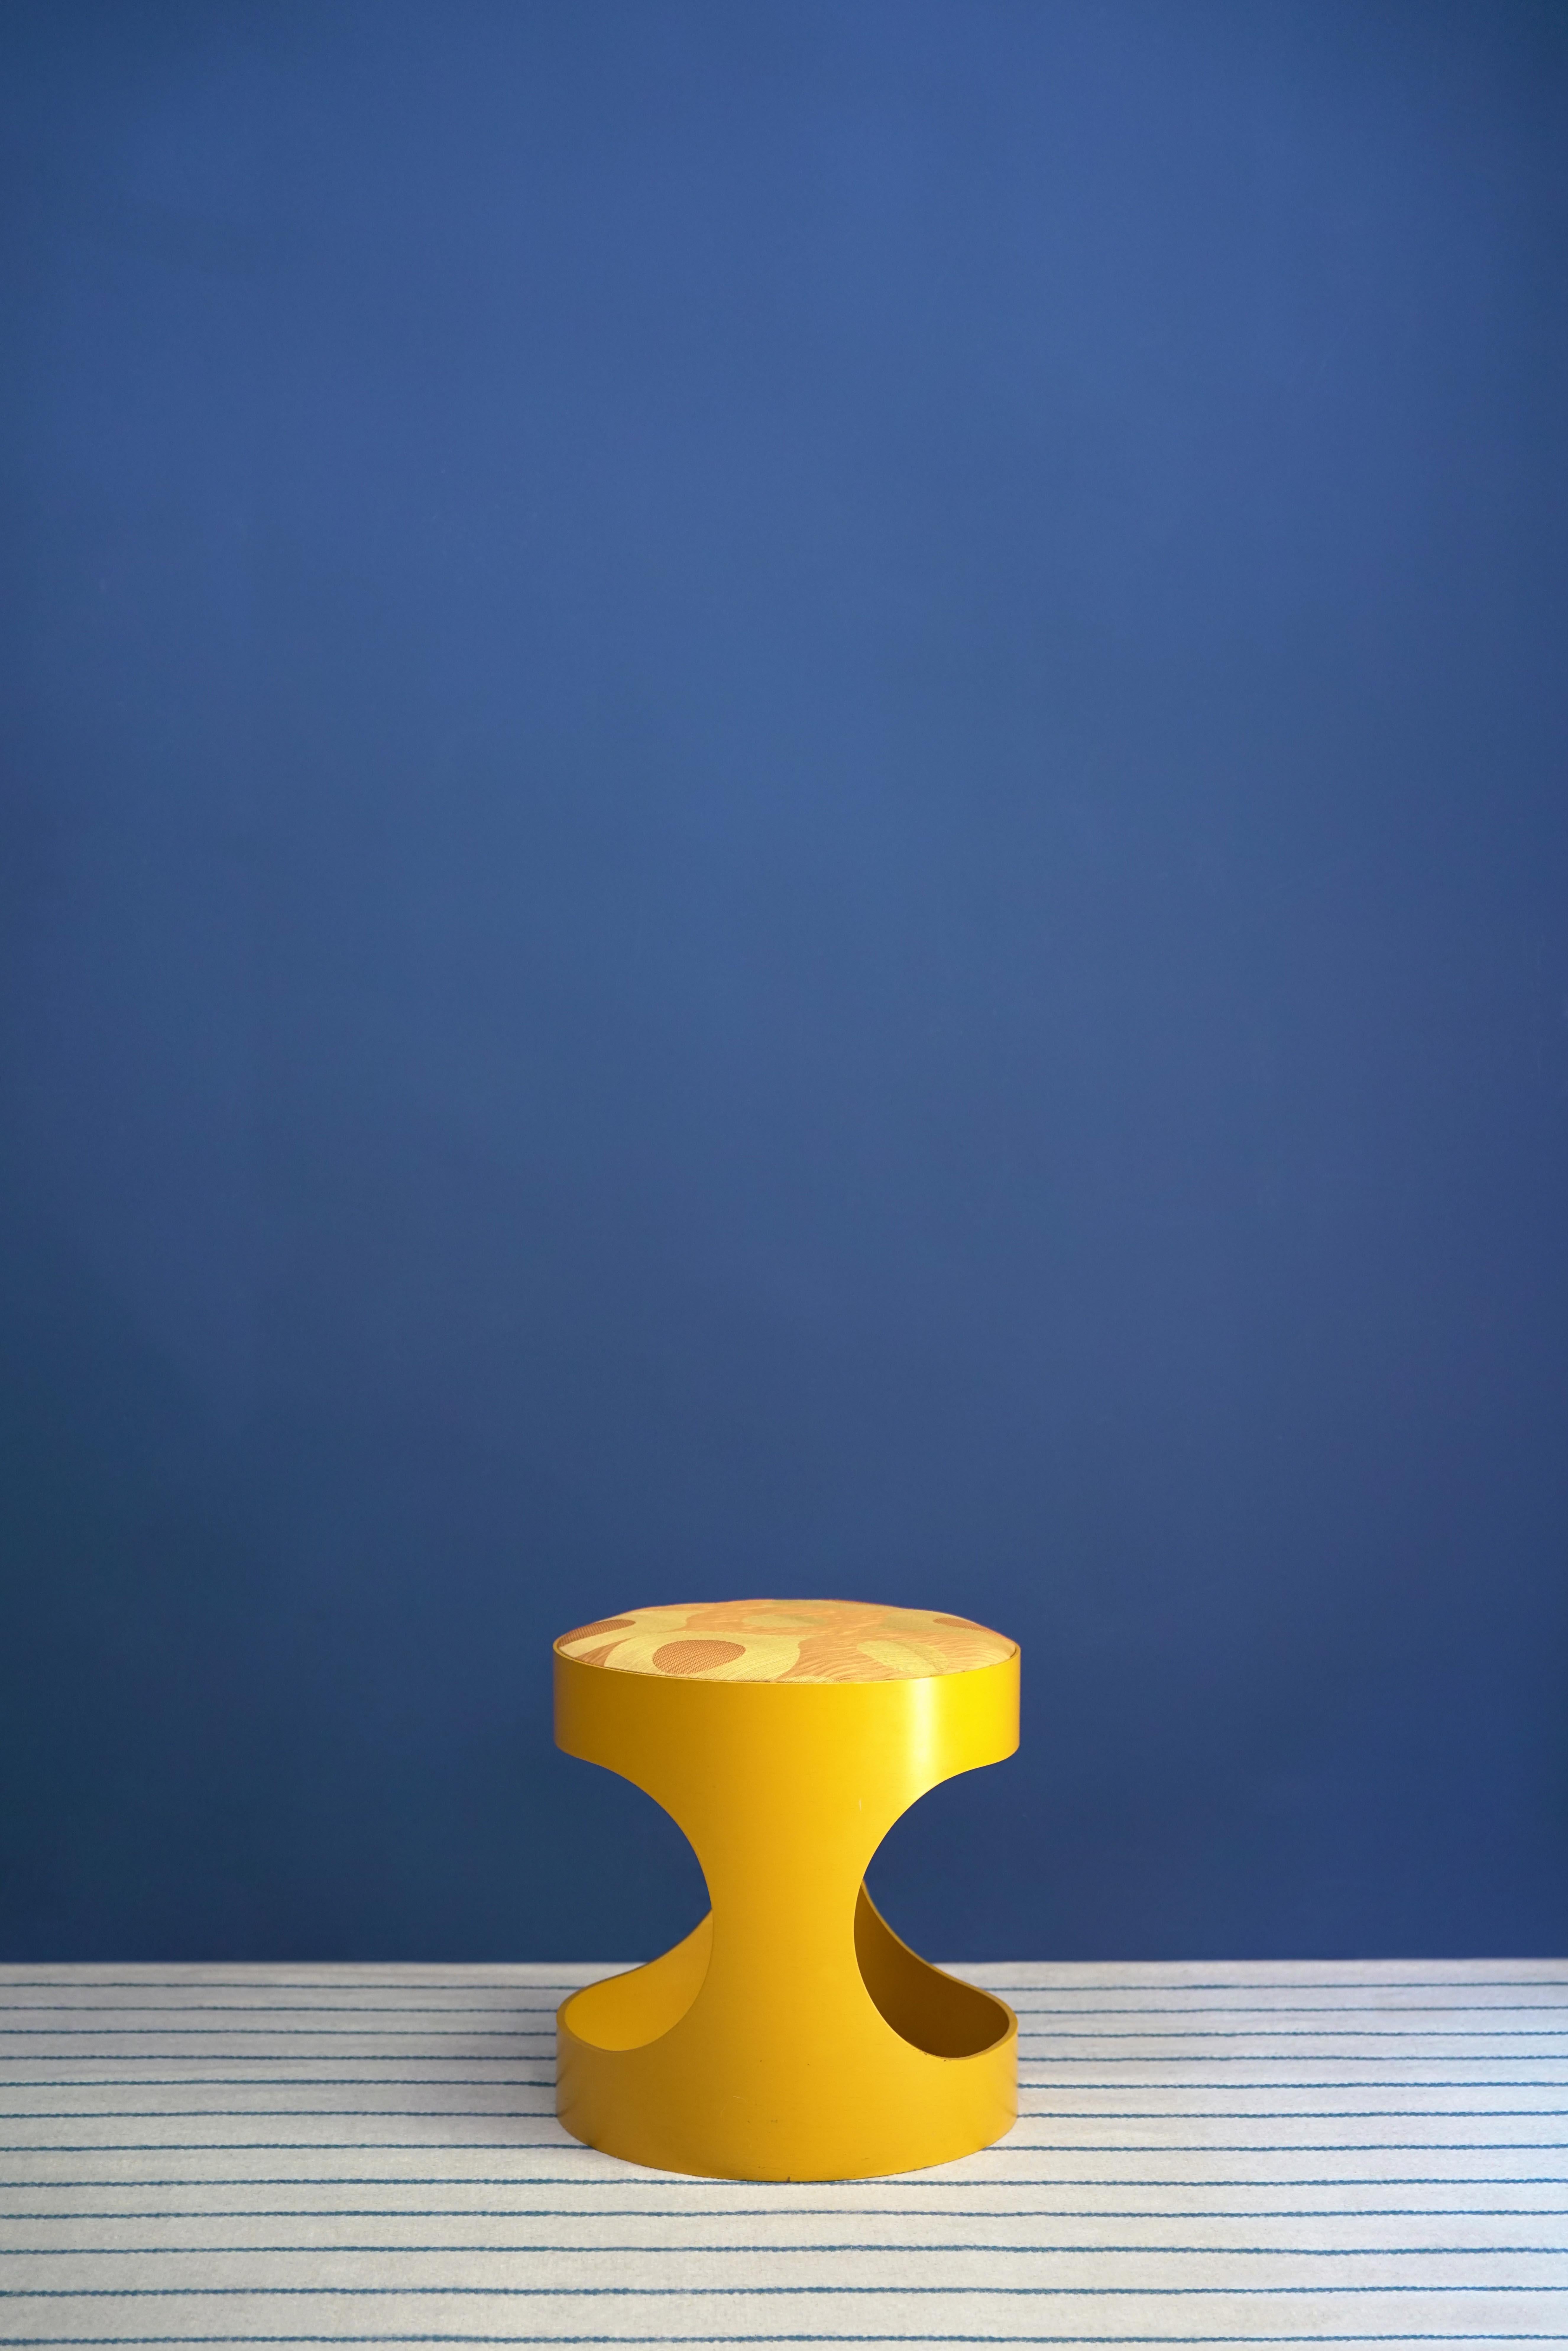 Tabouret des années 1960 en bois courbé laqué jaune avec assise en soie par David Hicks.

David Nightingale Hicks (25 mars 1929 - 29 mars 1998) était un décorateur d'intérieur et un designer anglais, connu pour l'utilisation de couleurs vives, le